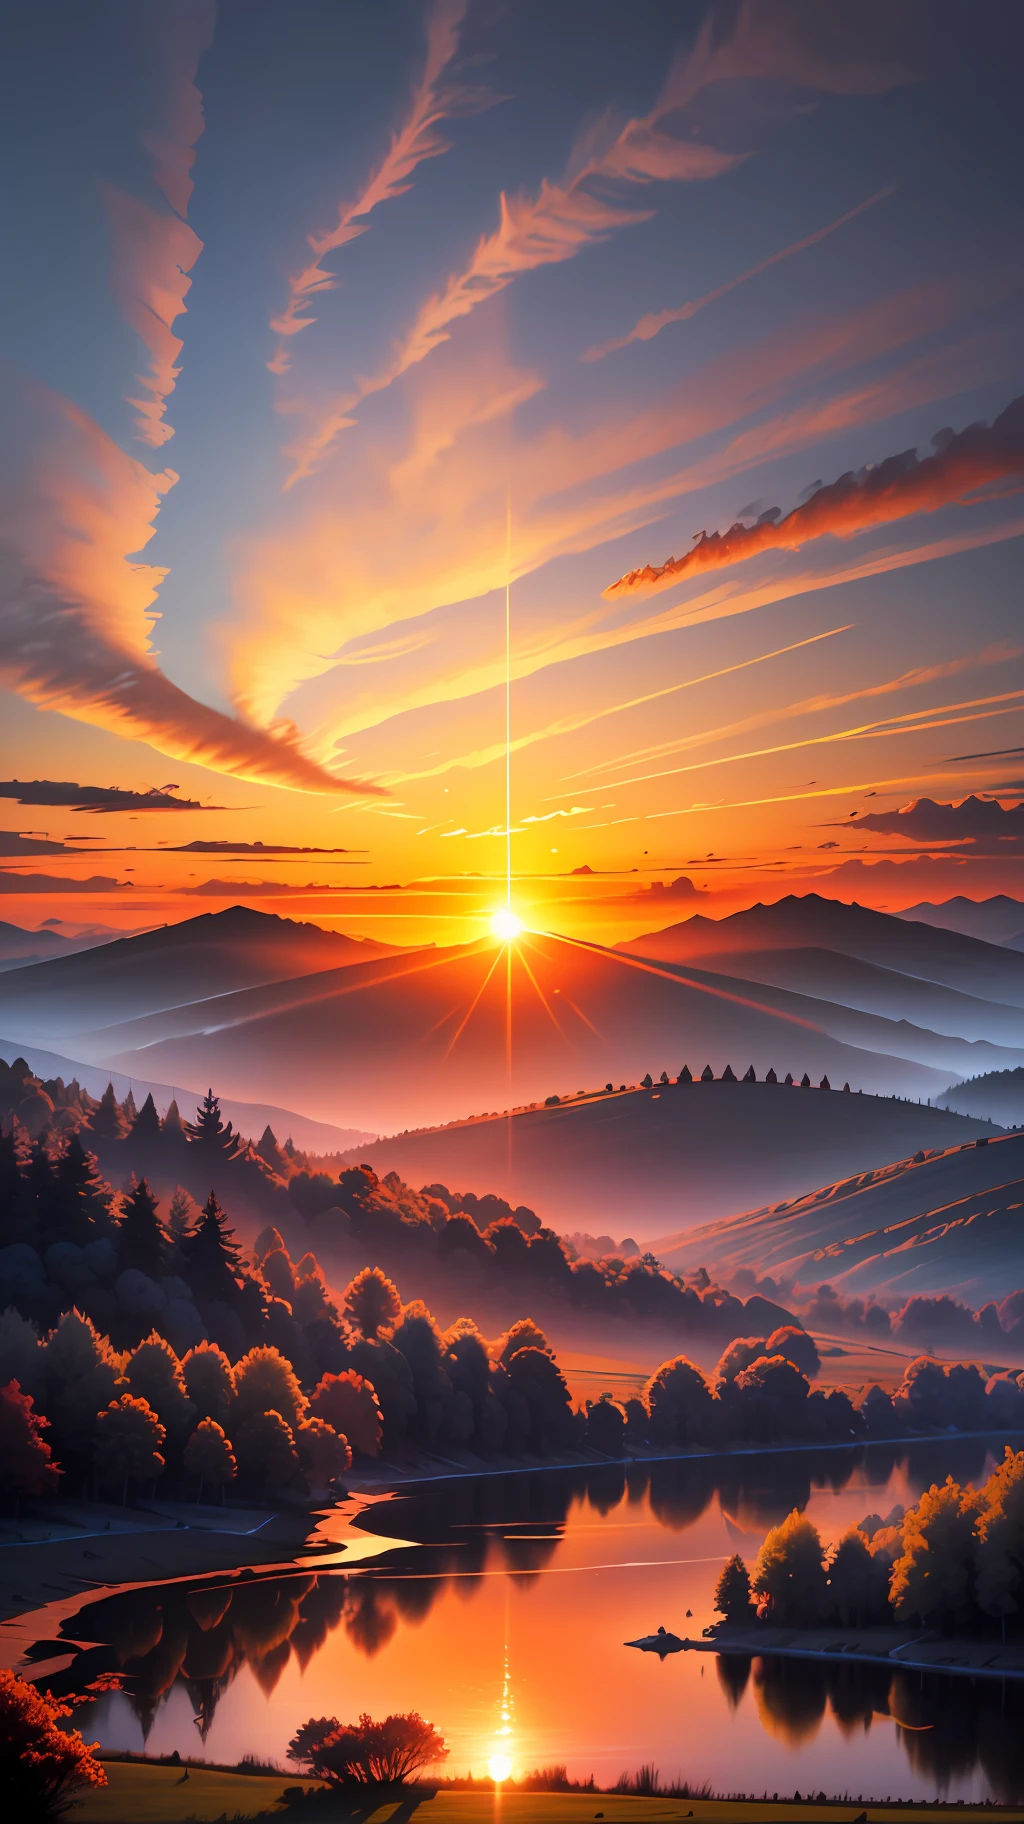 صورة تصور شروق الشمس المشع فوق منظر طبيعي هادئ وهادئ